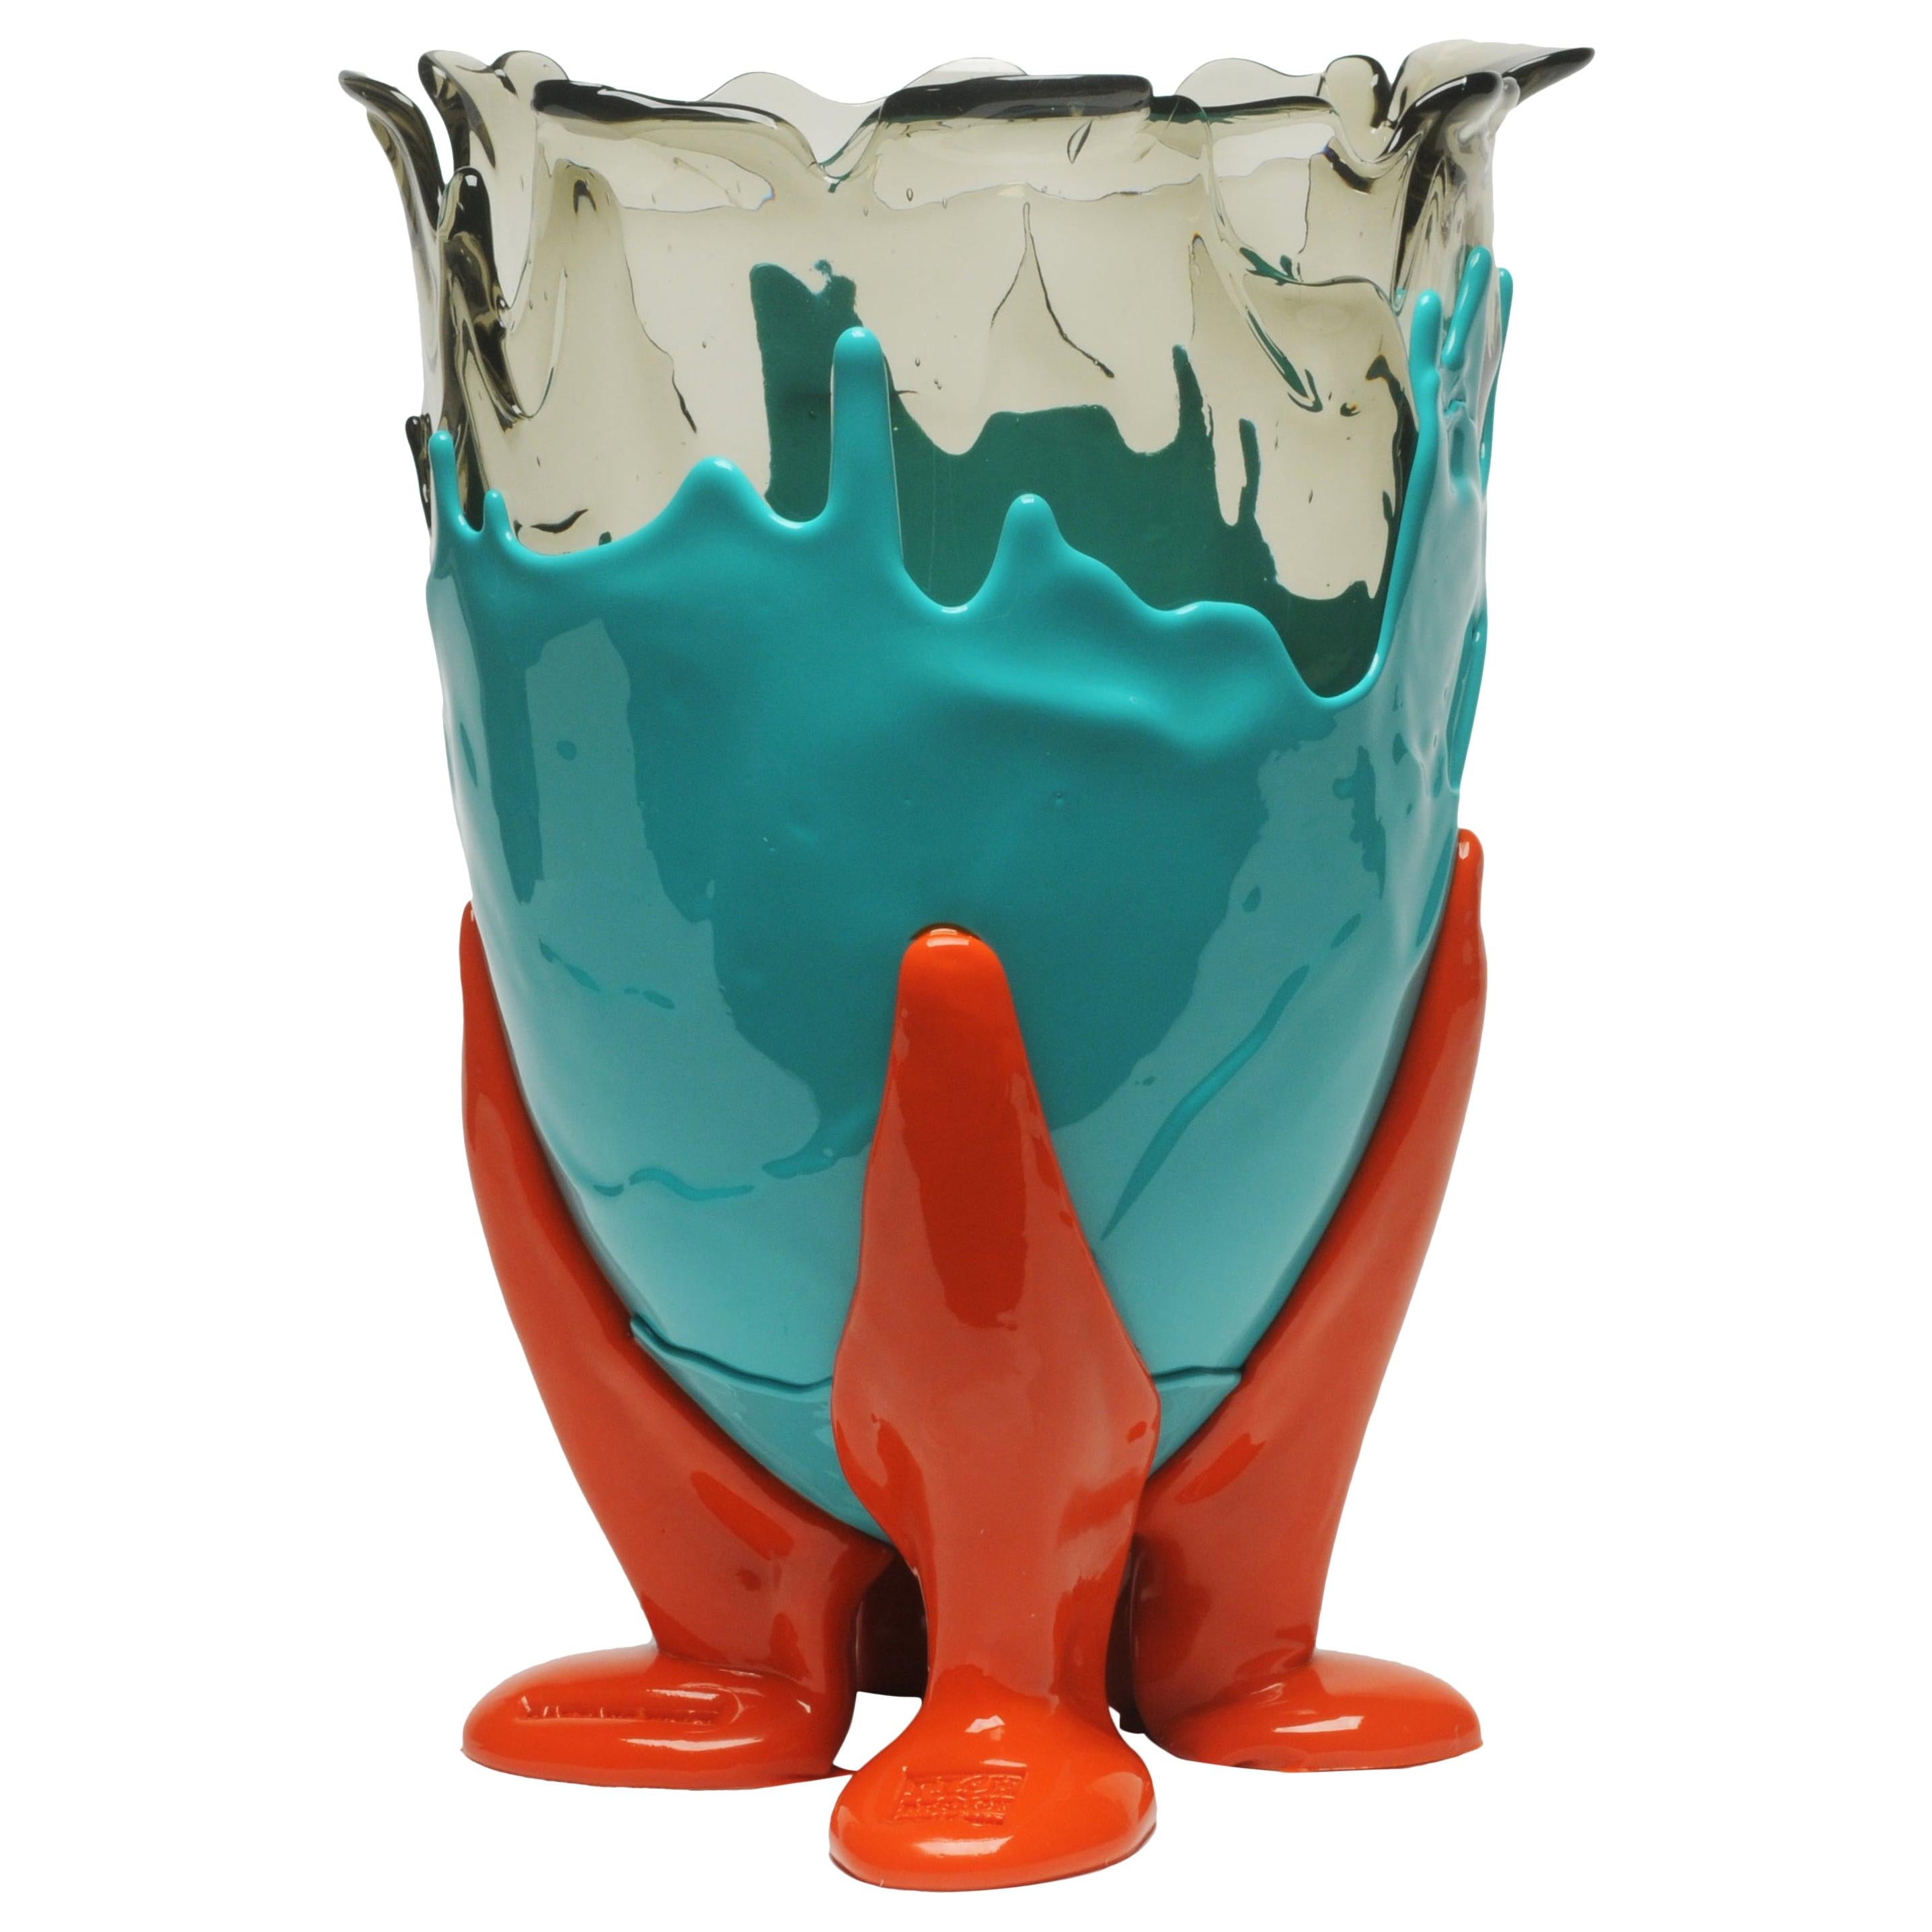 21st Century Gaetano Pesce Clear Vase M Resin Aqua Turquoise Orange